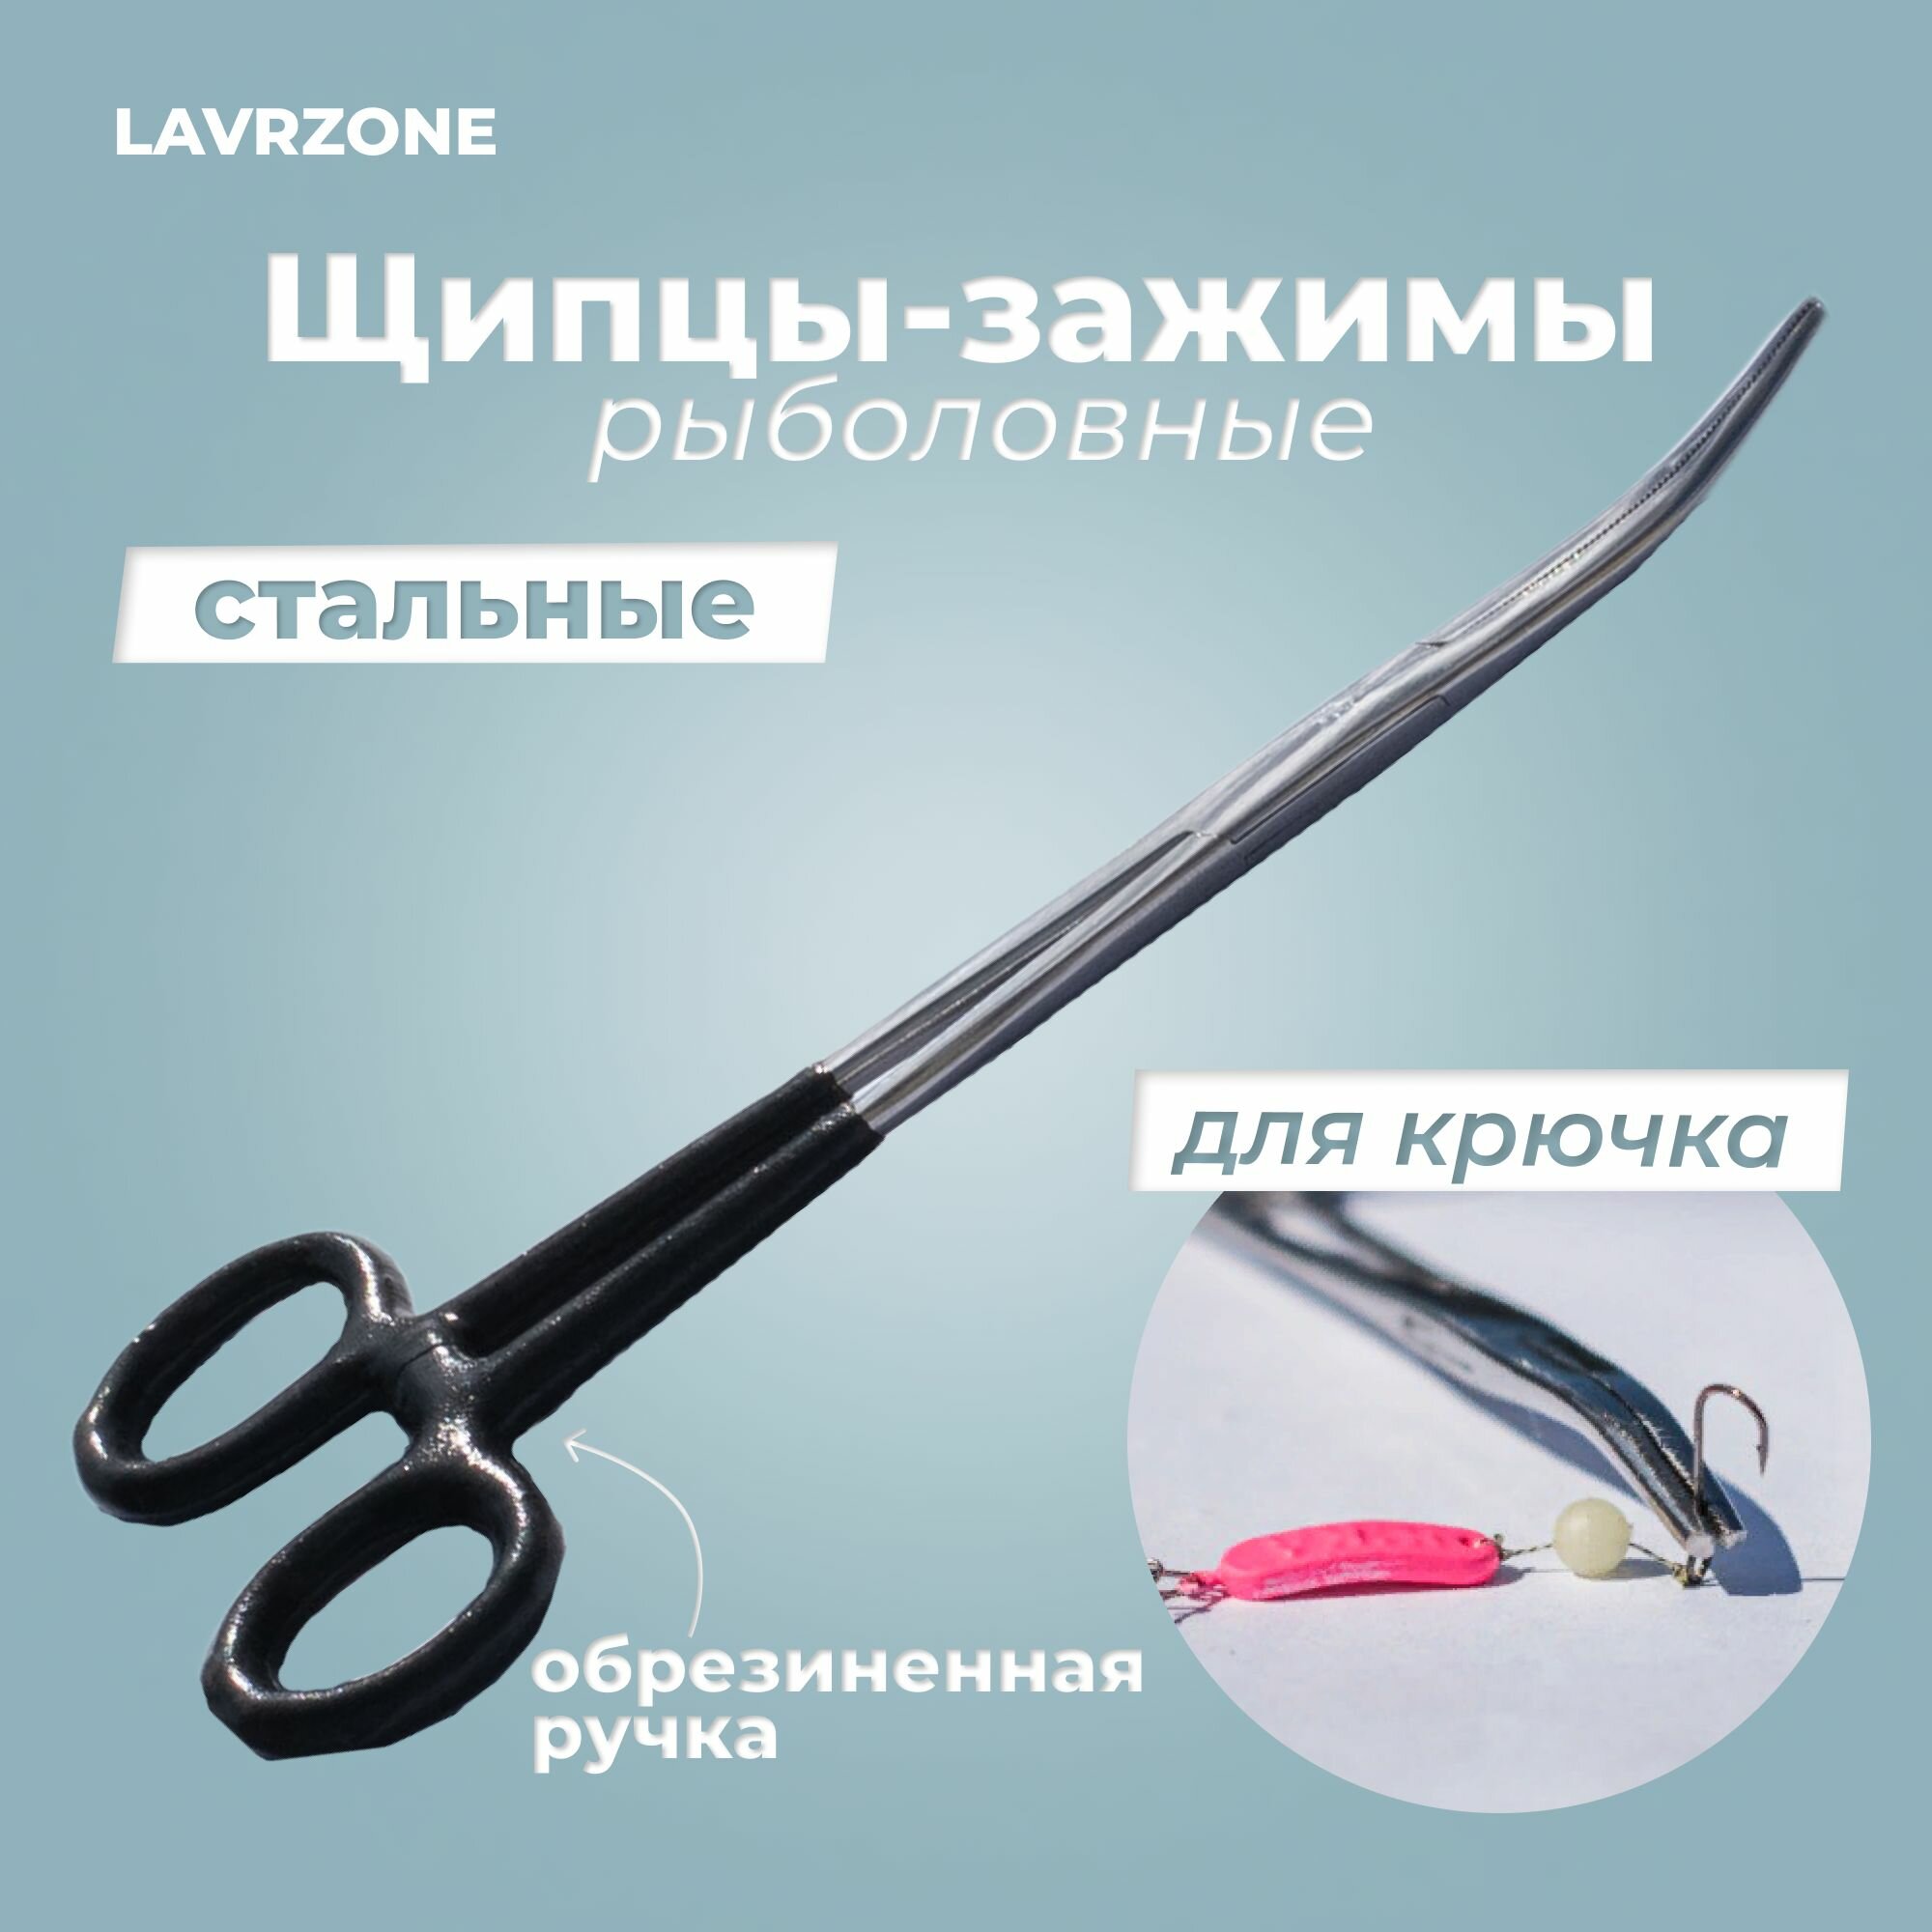 Щипцы - экстрактор с обрезиненной ручкой для рыбалки зажимы рыболовные LAVRZONE для крючка (зажим корнцанг экстрактор) с фиксатором стальные